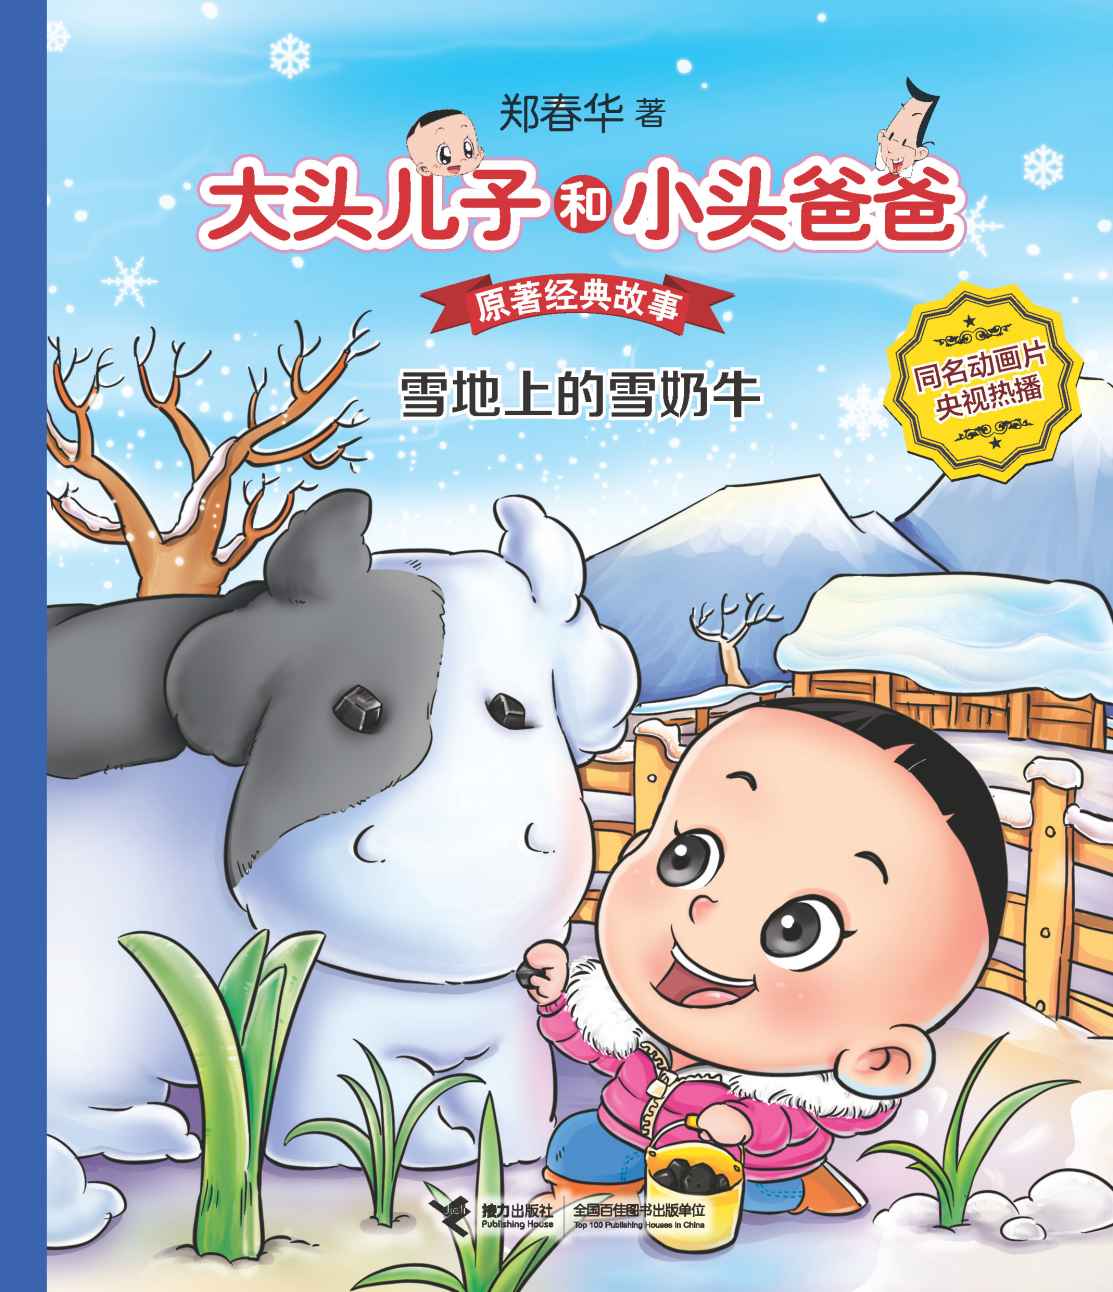 大头儿子和小头爸爸·原著经典故事2:雪地上的雪奶牛